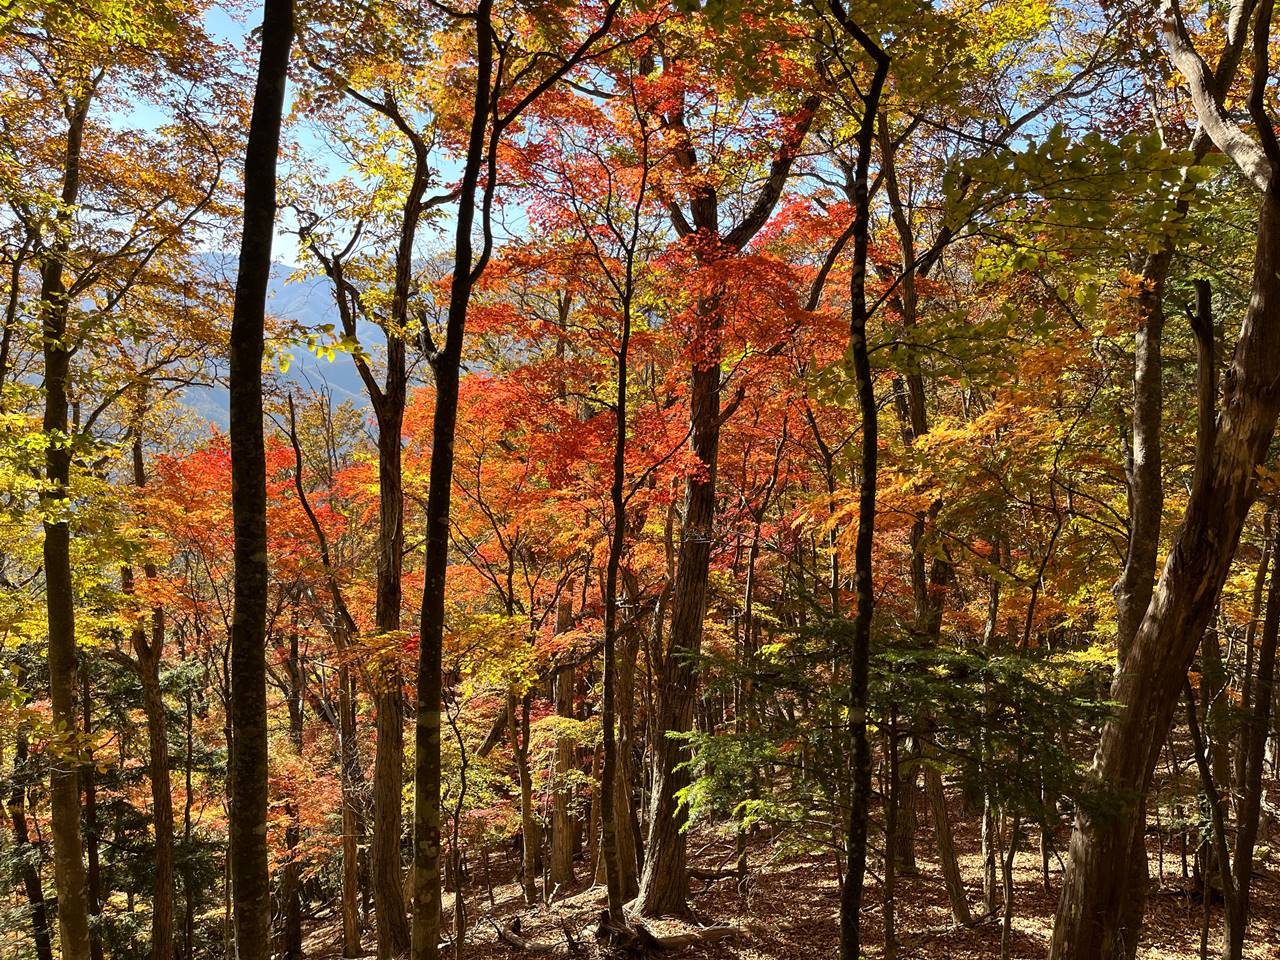 【奥多摩】奈良倉山〜鶴寝山〜大マテイ山 紅葉が凄まじい秋の登山へ